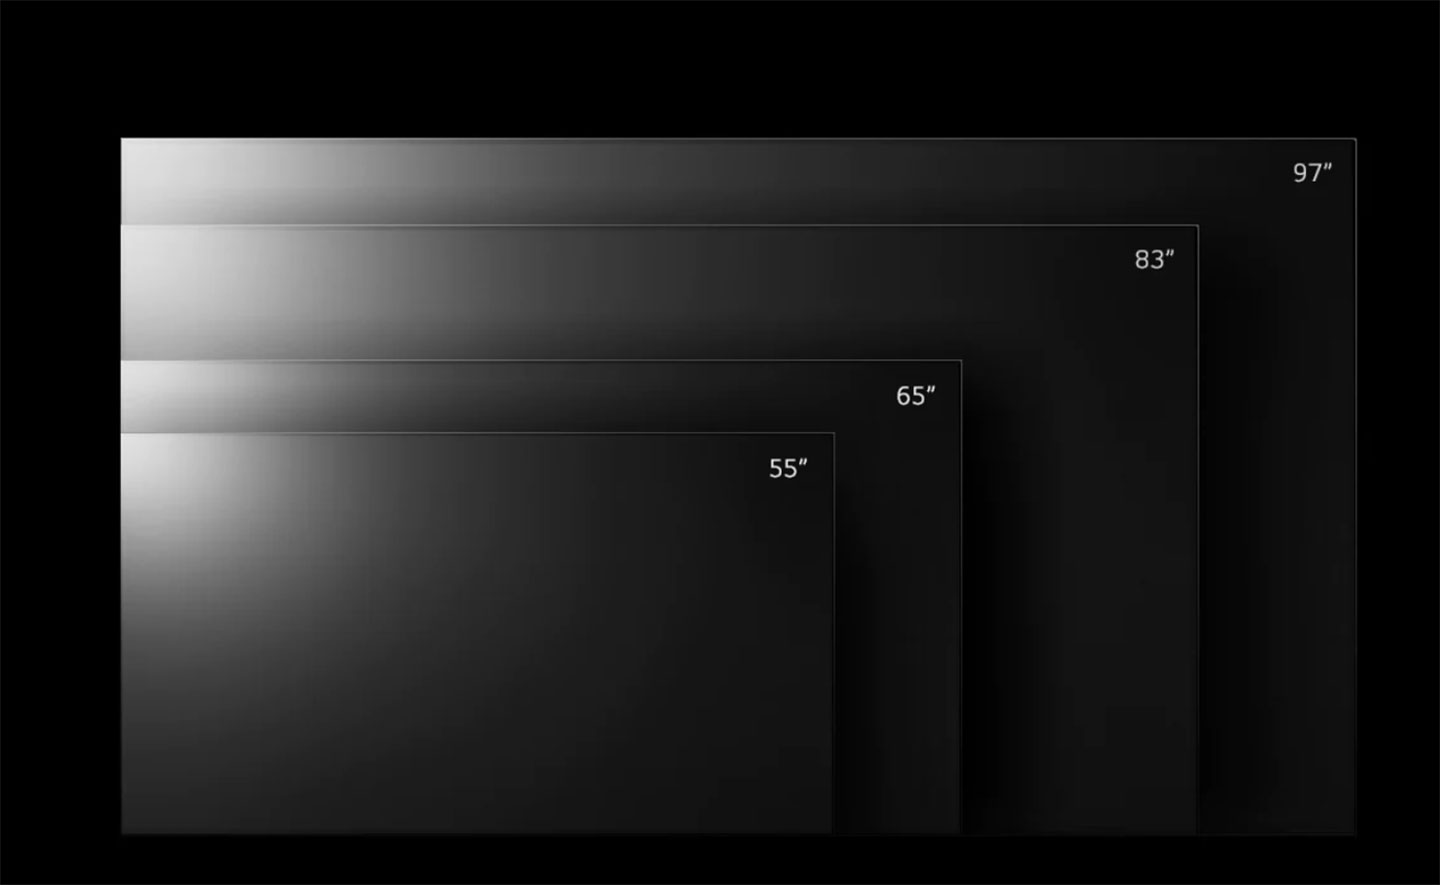 LG OLED evo G2 零間隙藝廊系列提供最完整的面板尺寸選擇，除了主流的 55 吋、65 吋之外，也有 83 吋與最大 97 吋的超大型面板規格可供挑選。